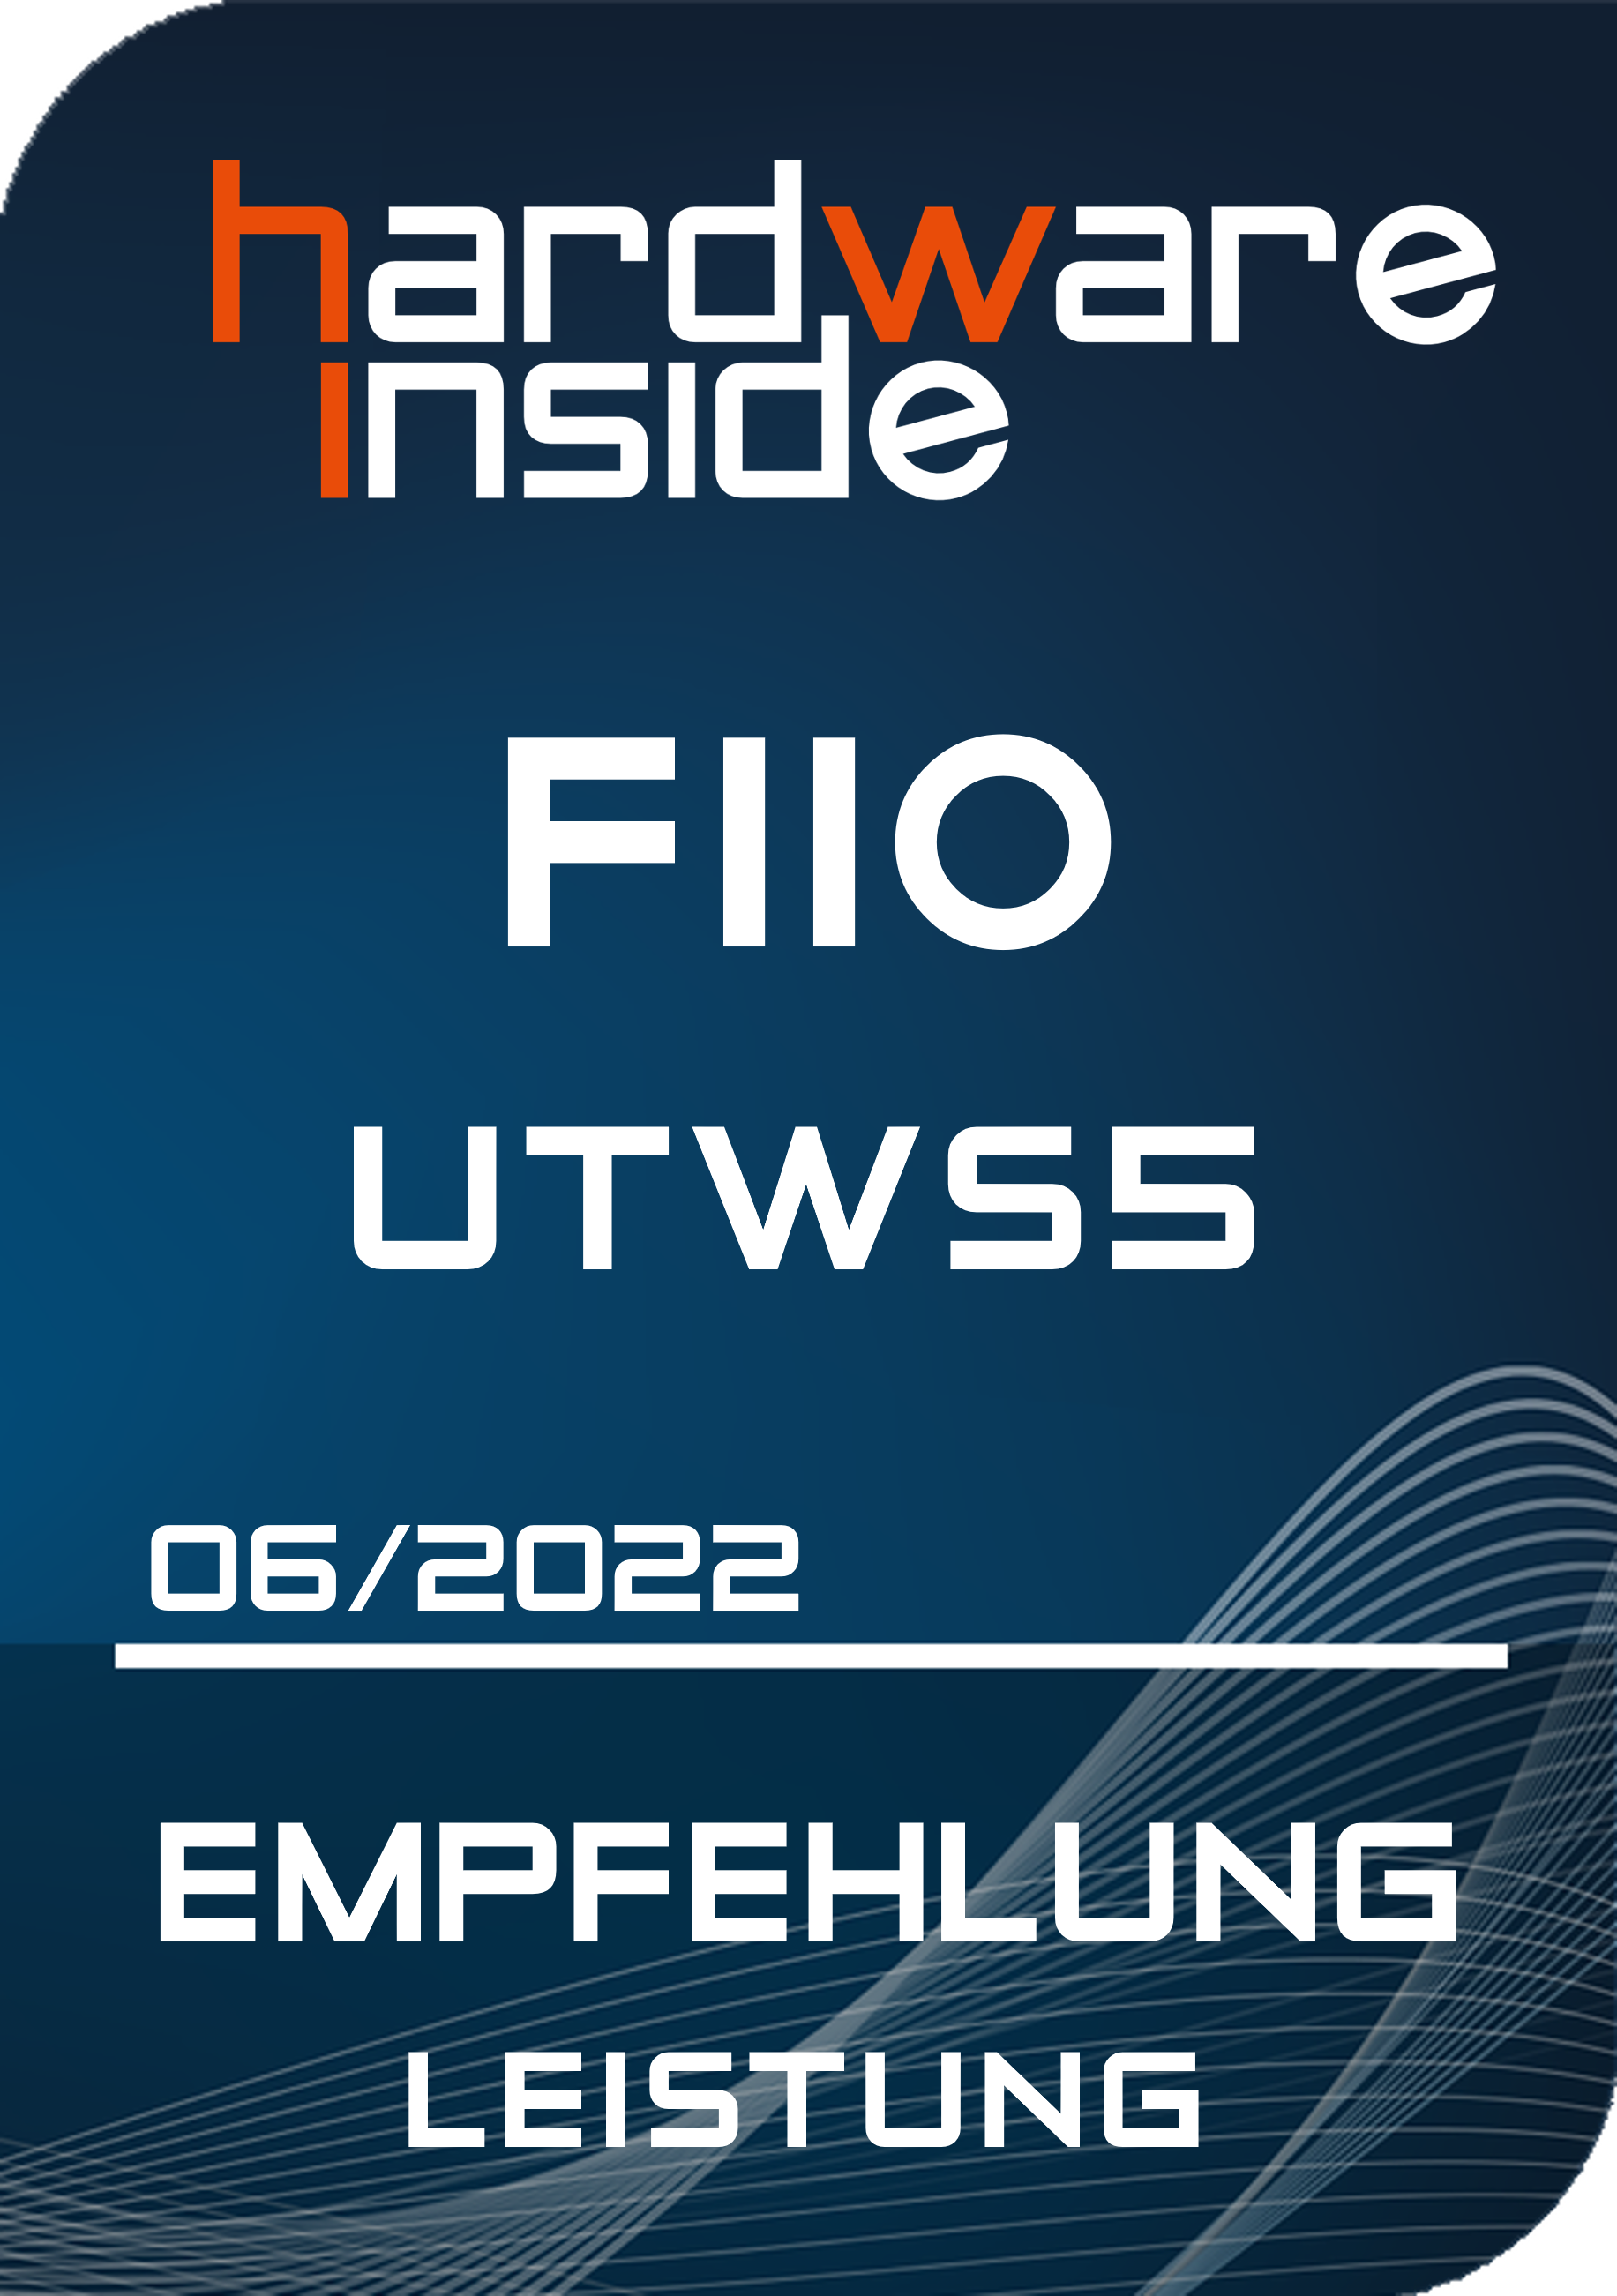 FiiO-UTWS5-Review-Award-HighRes.png